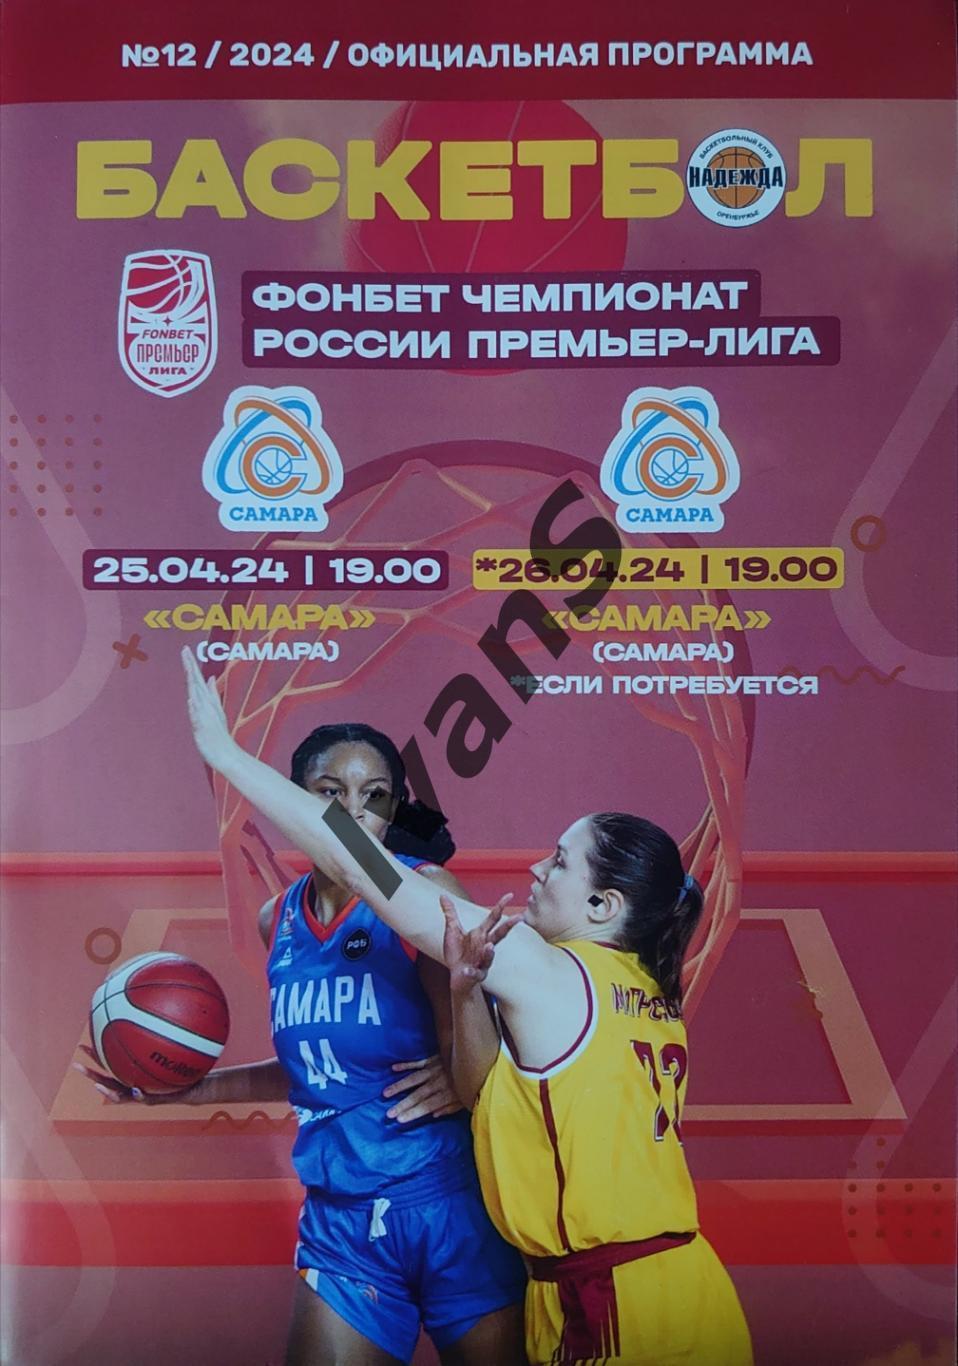 FONBET — Премьер-лига 2023/24 г.г. «Надежда» (Оренбург) — ЖБК «Самара» (Самара).